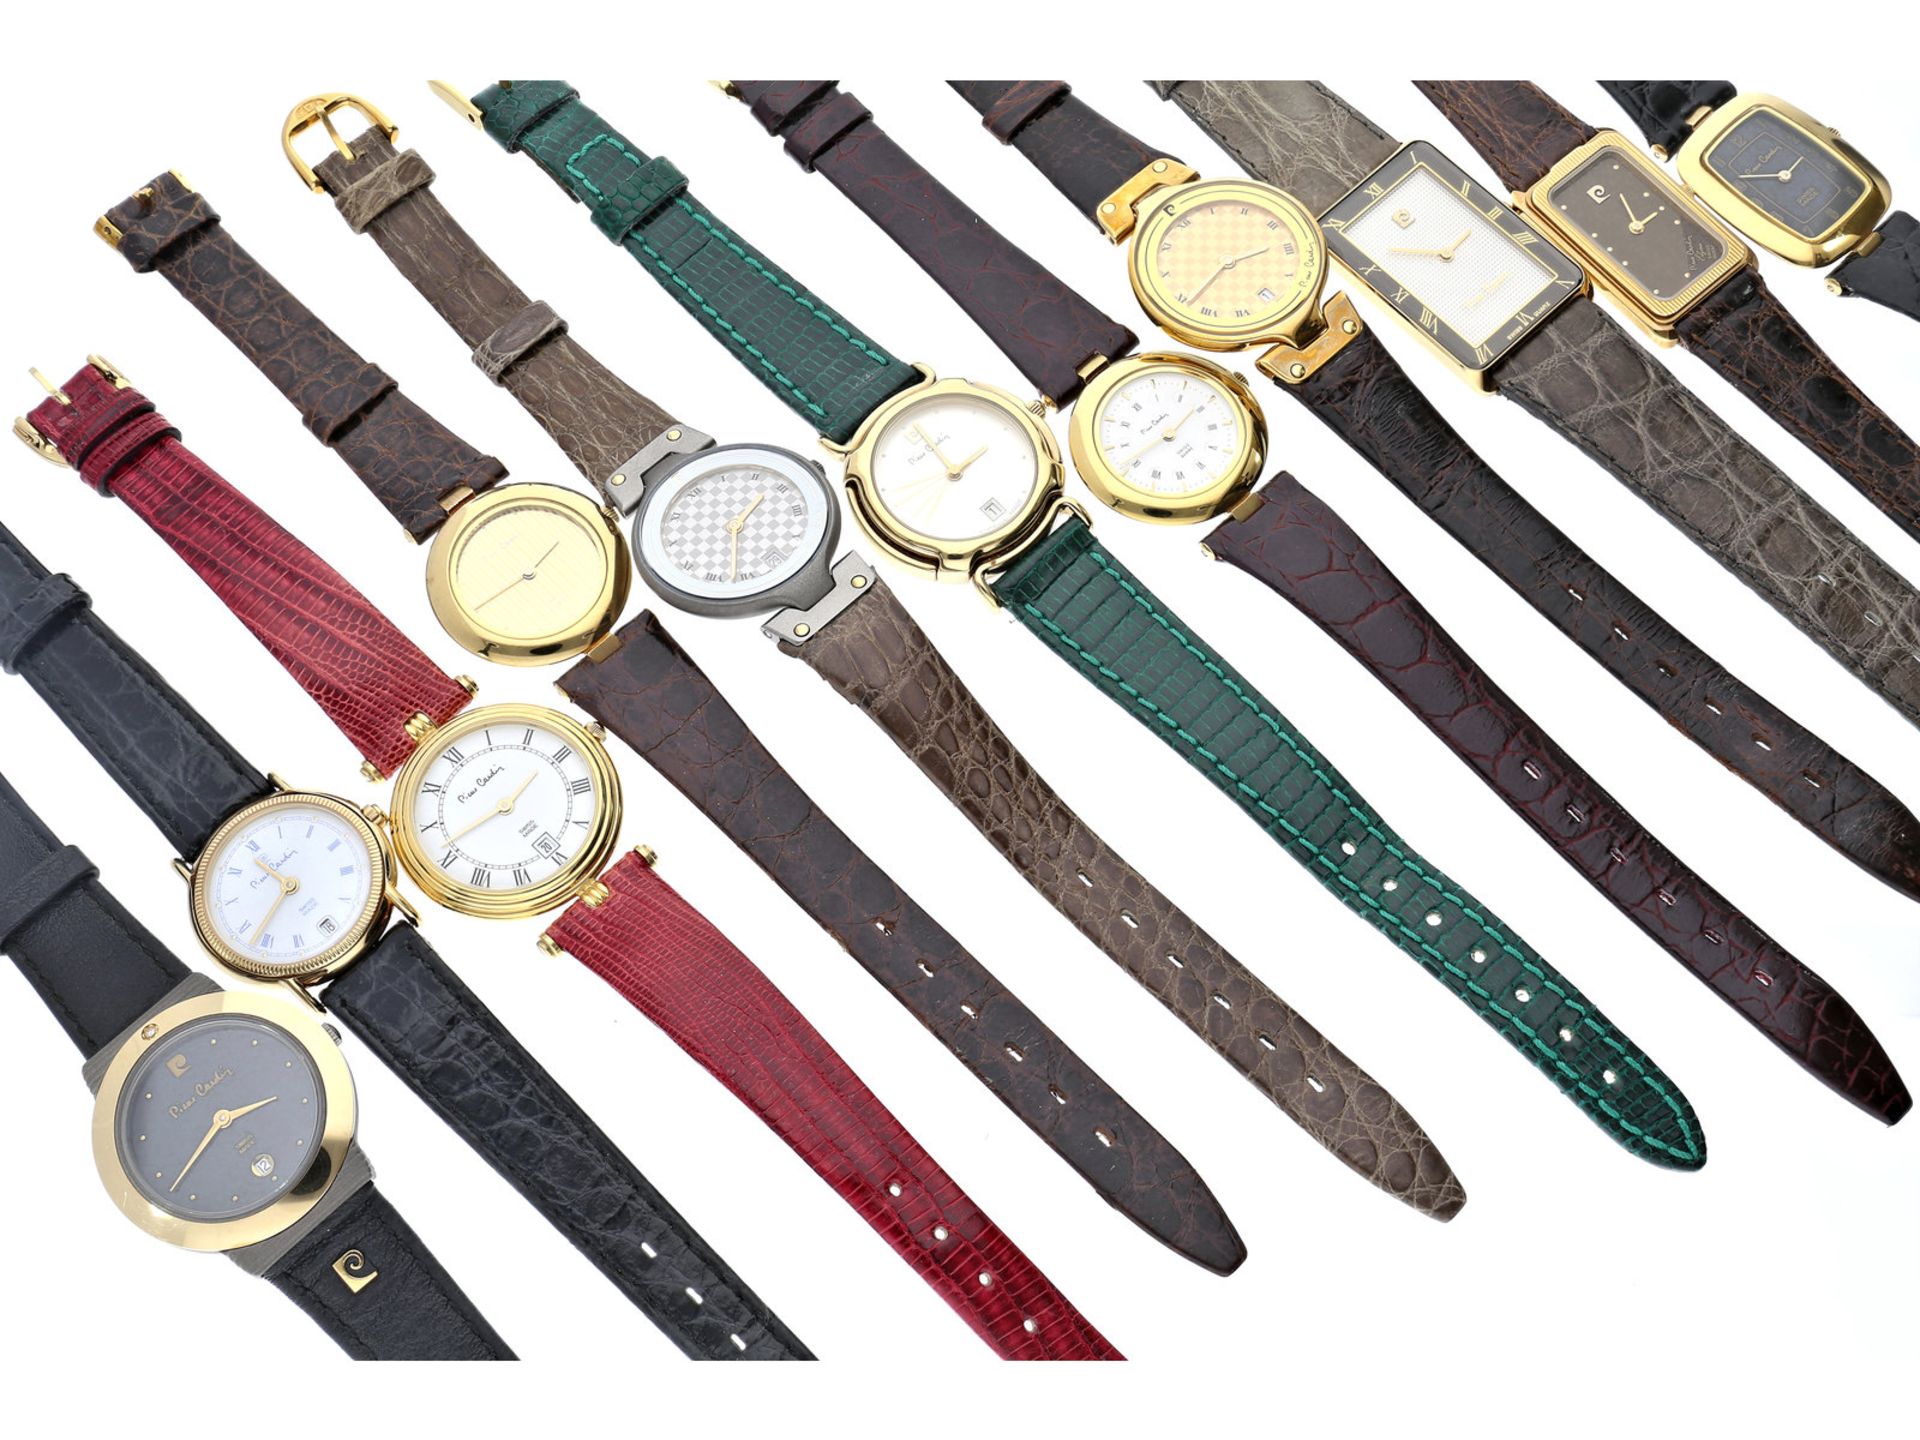 Armbanduhren: großes Konvolut von 11 Designeruhren des Herstellers Pierre Cardin, vintage